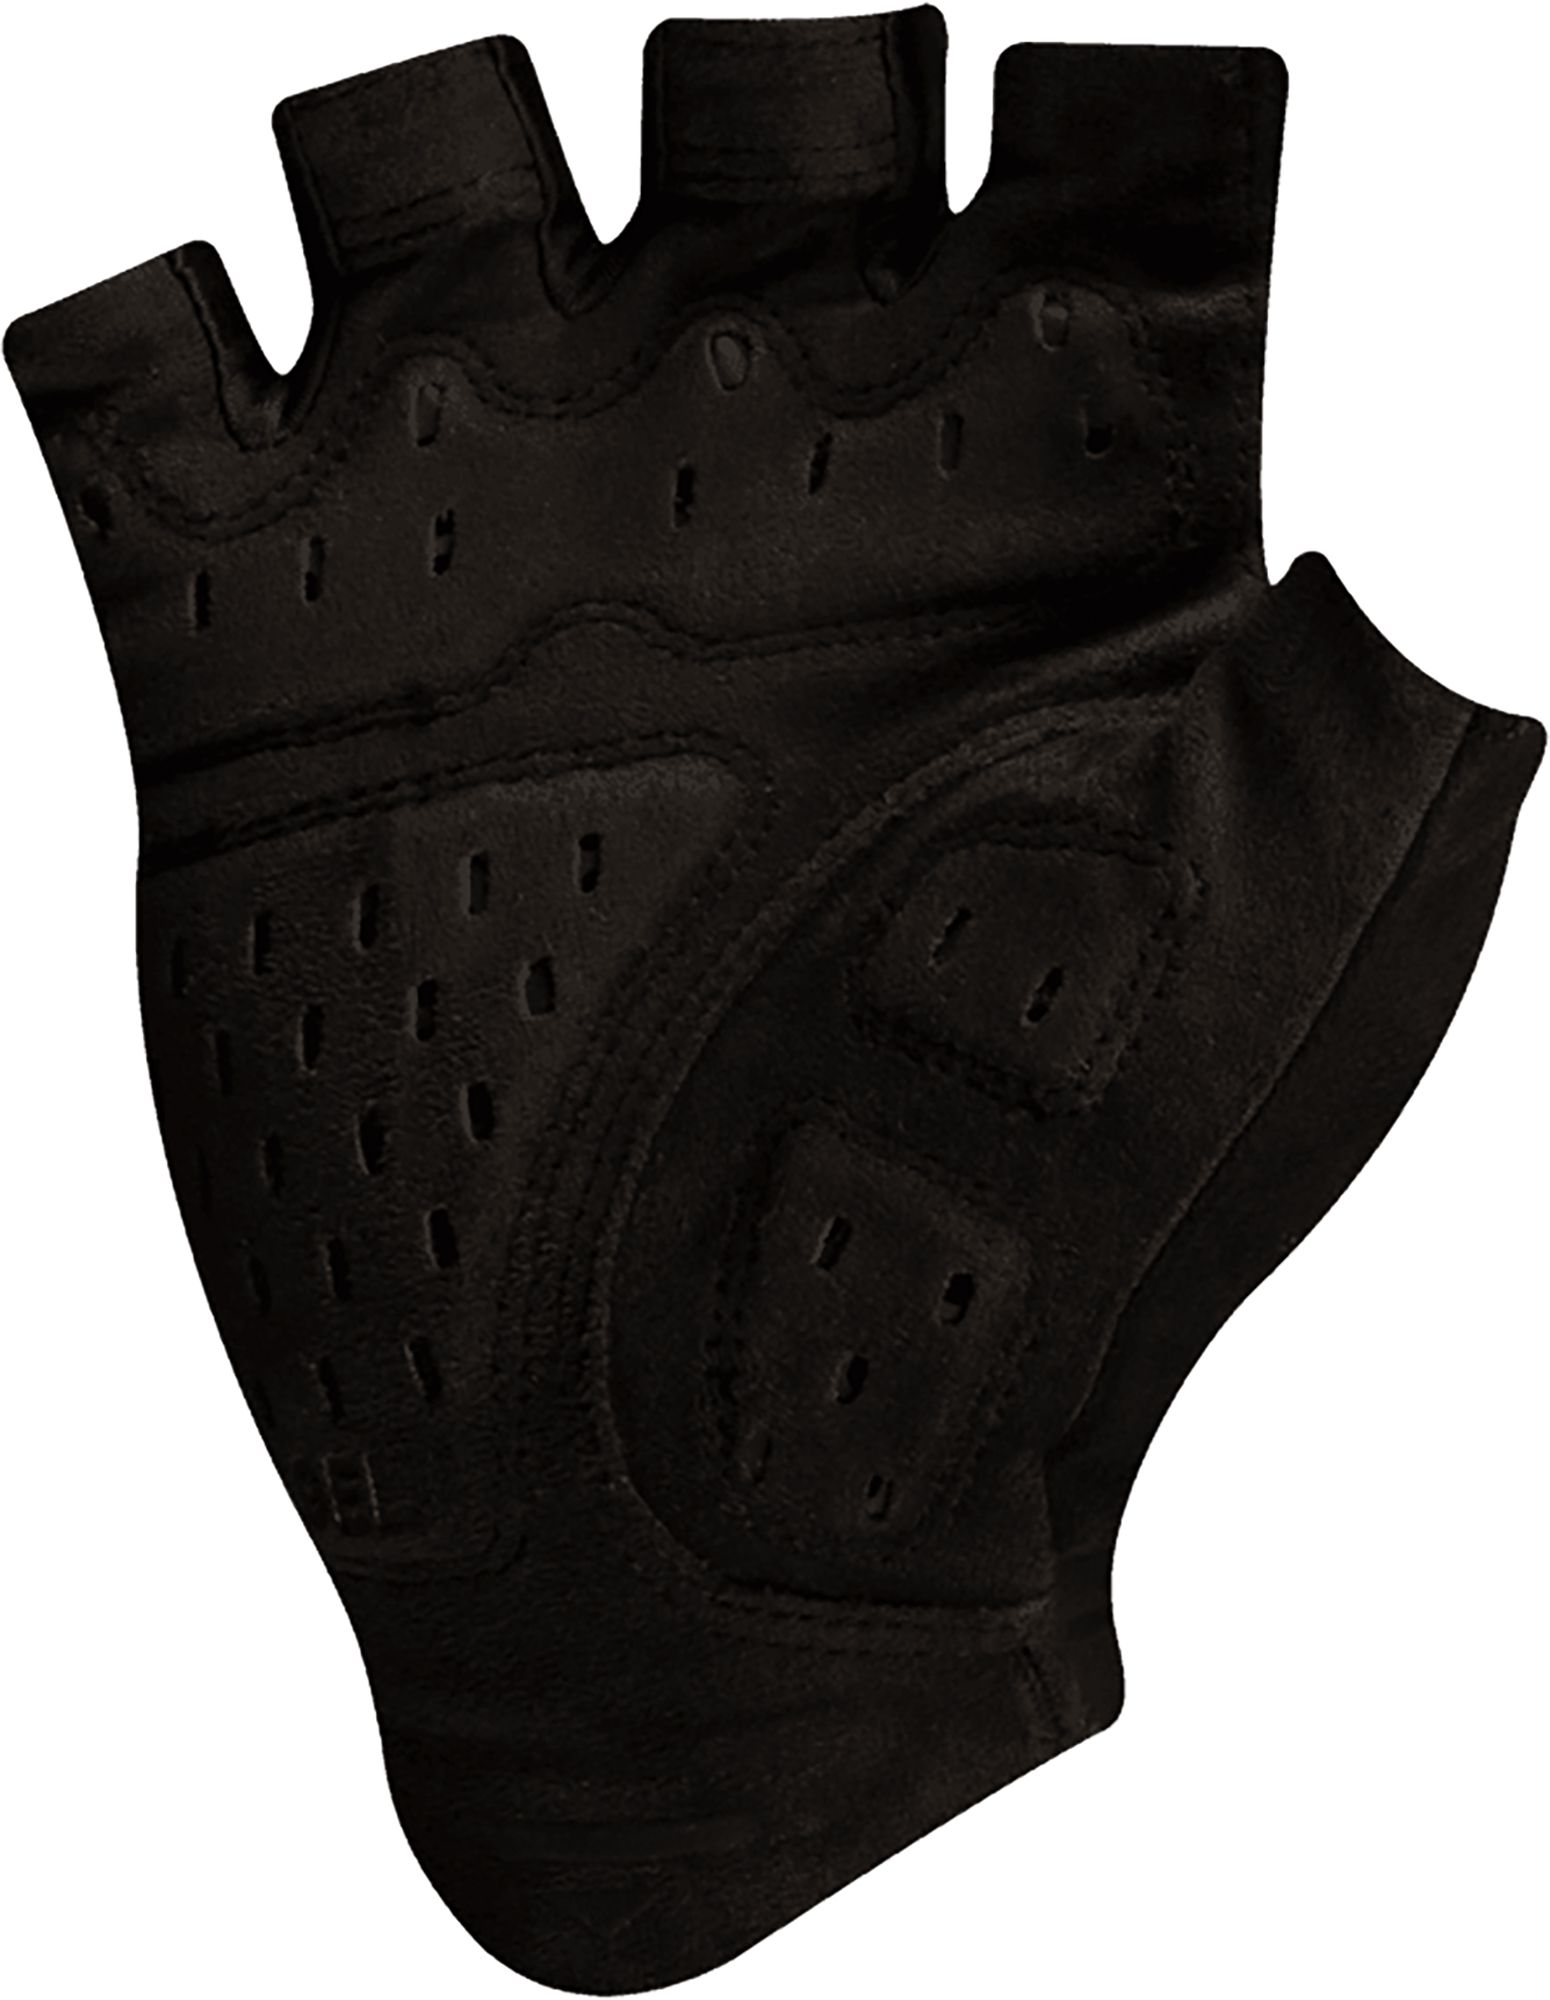 PEARL iZUMi Men's Elite Gel Bike Gloves